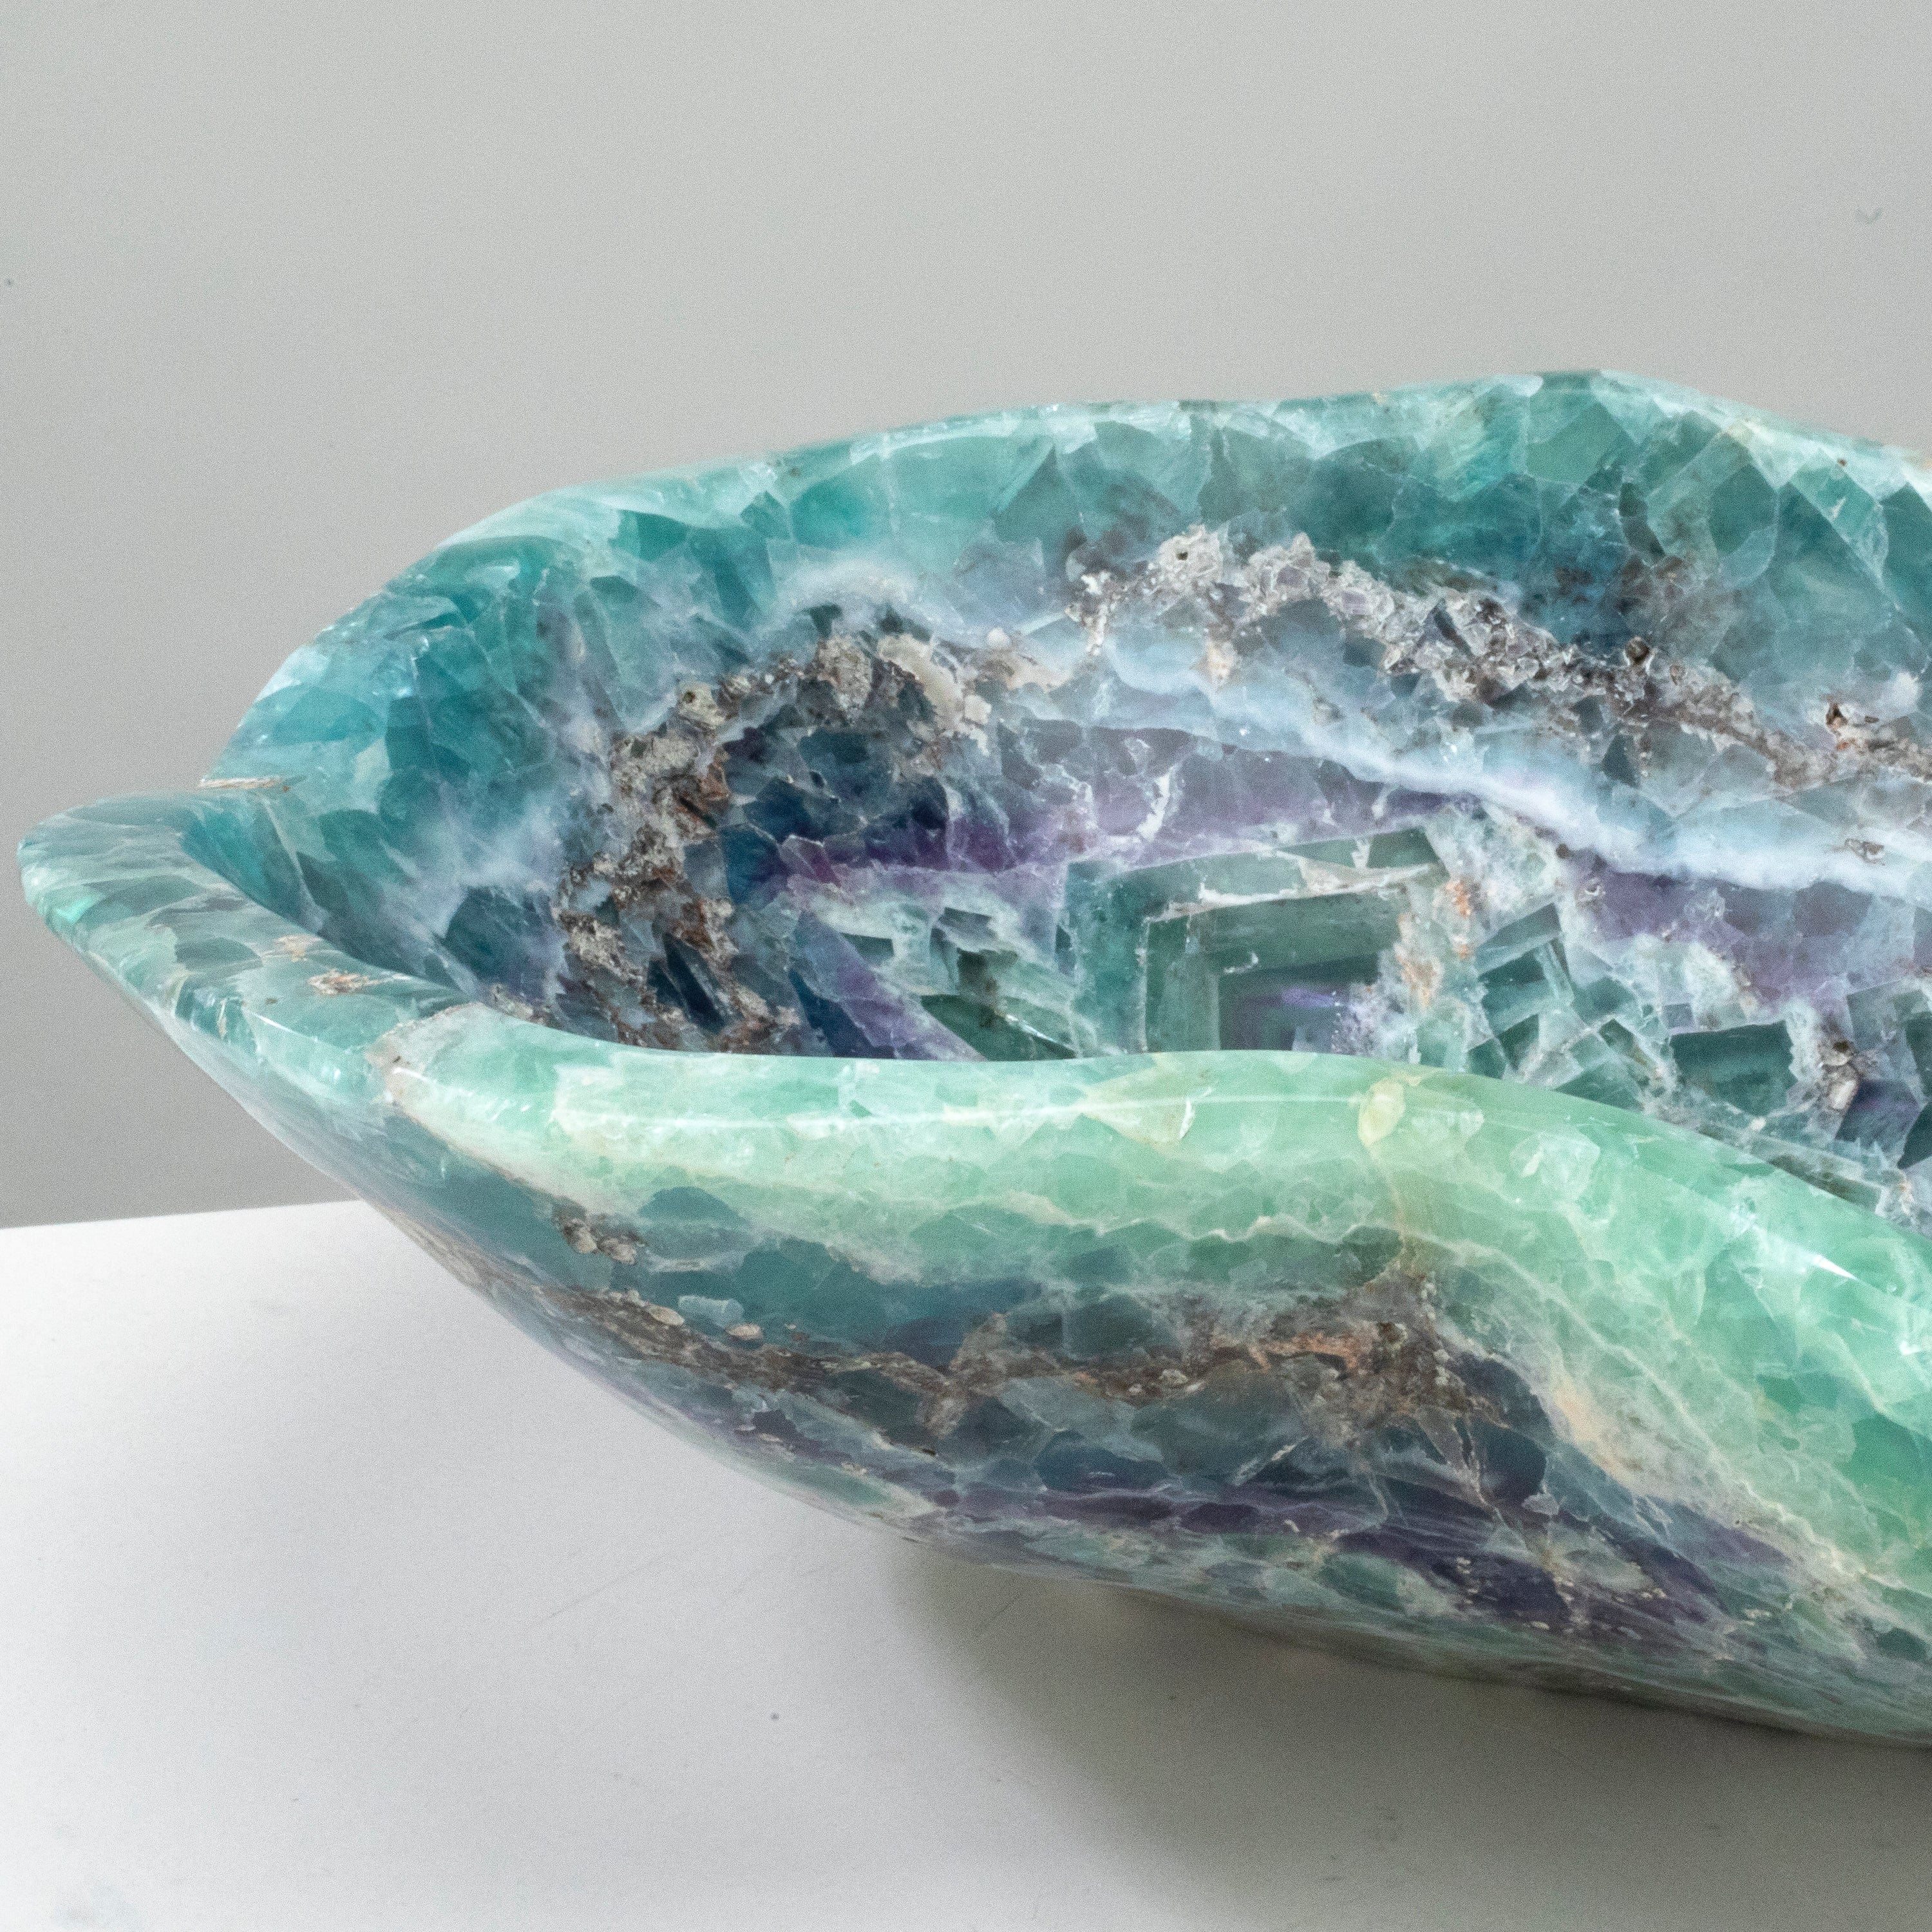 KALIFANO Gemstone Bowls Natural Blue / Green Fluorite Bowl 13" BFL7600.001